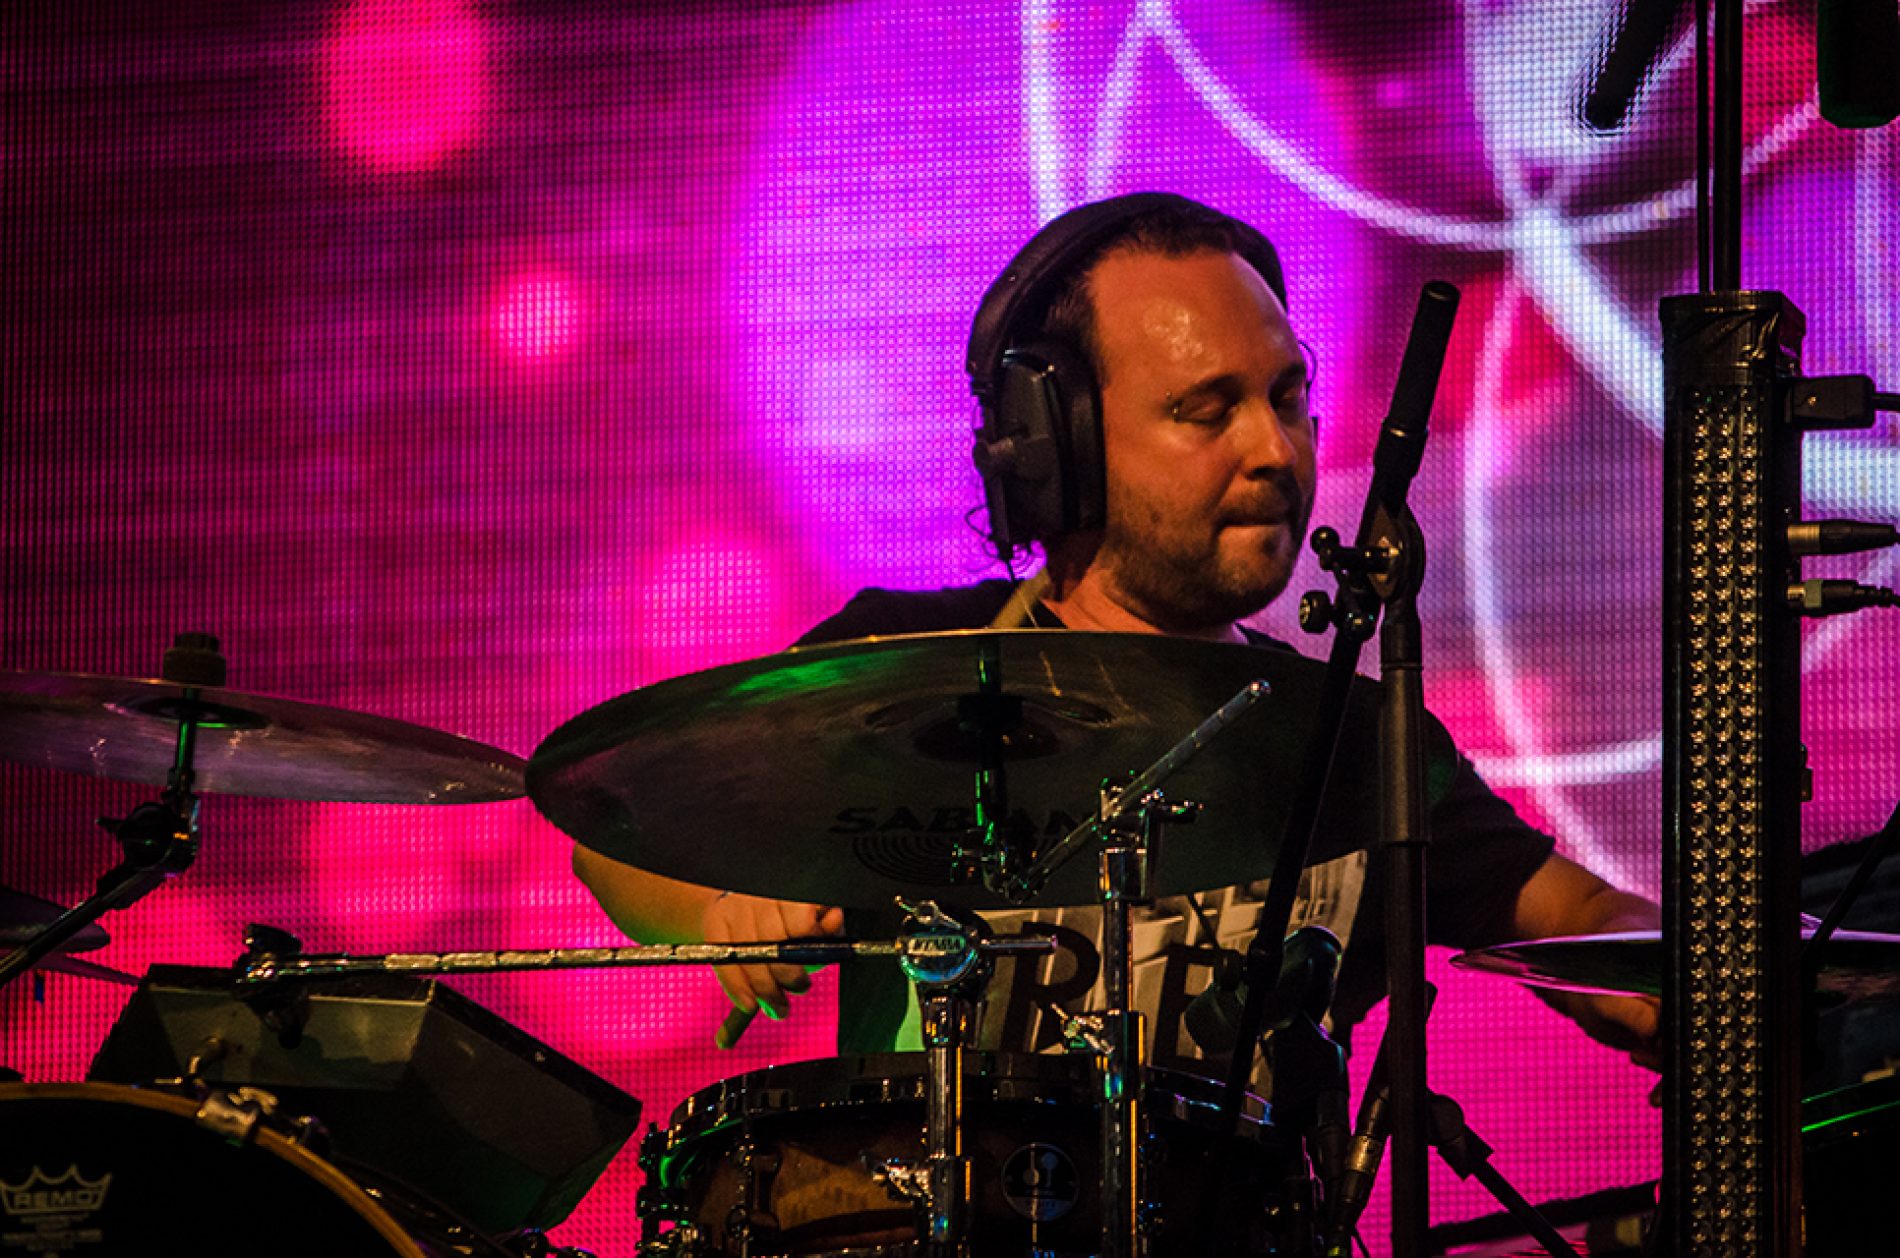 Drum Stage interviu: Adrian Tabacaru membru in formatia Taine